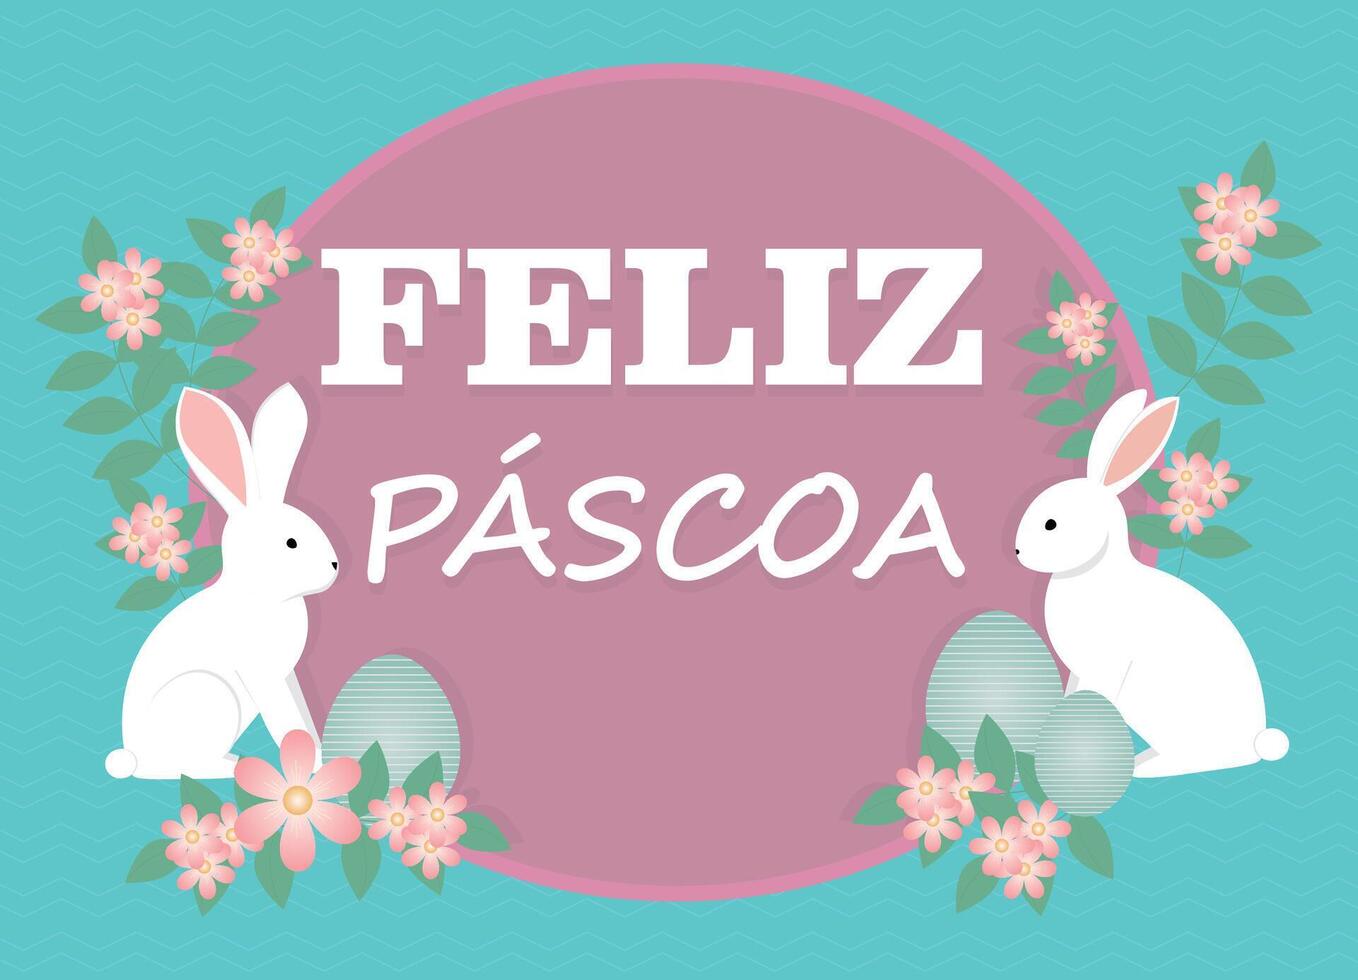 bandiera carta coniglio con il testo nel portoghese, scritto contento Pasqua, felice pascoa vettore